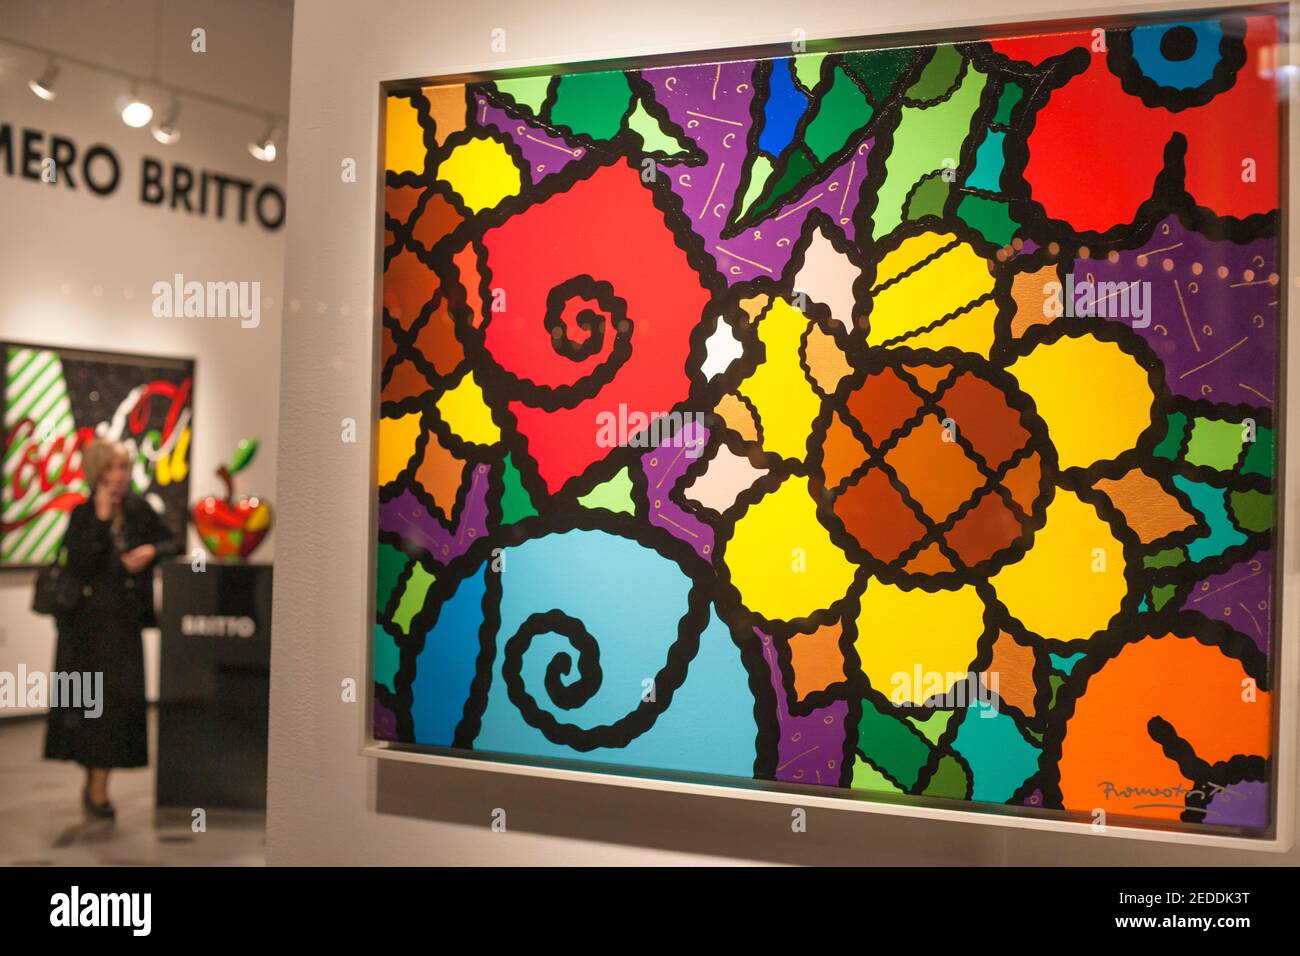 The Britto Central Art Gallery on the Lincoln Road Mall, Miami Beach. Stock Photo